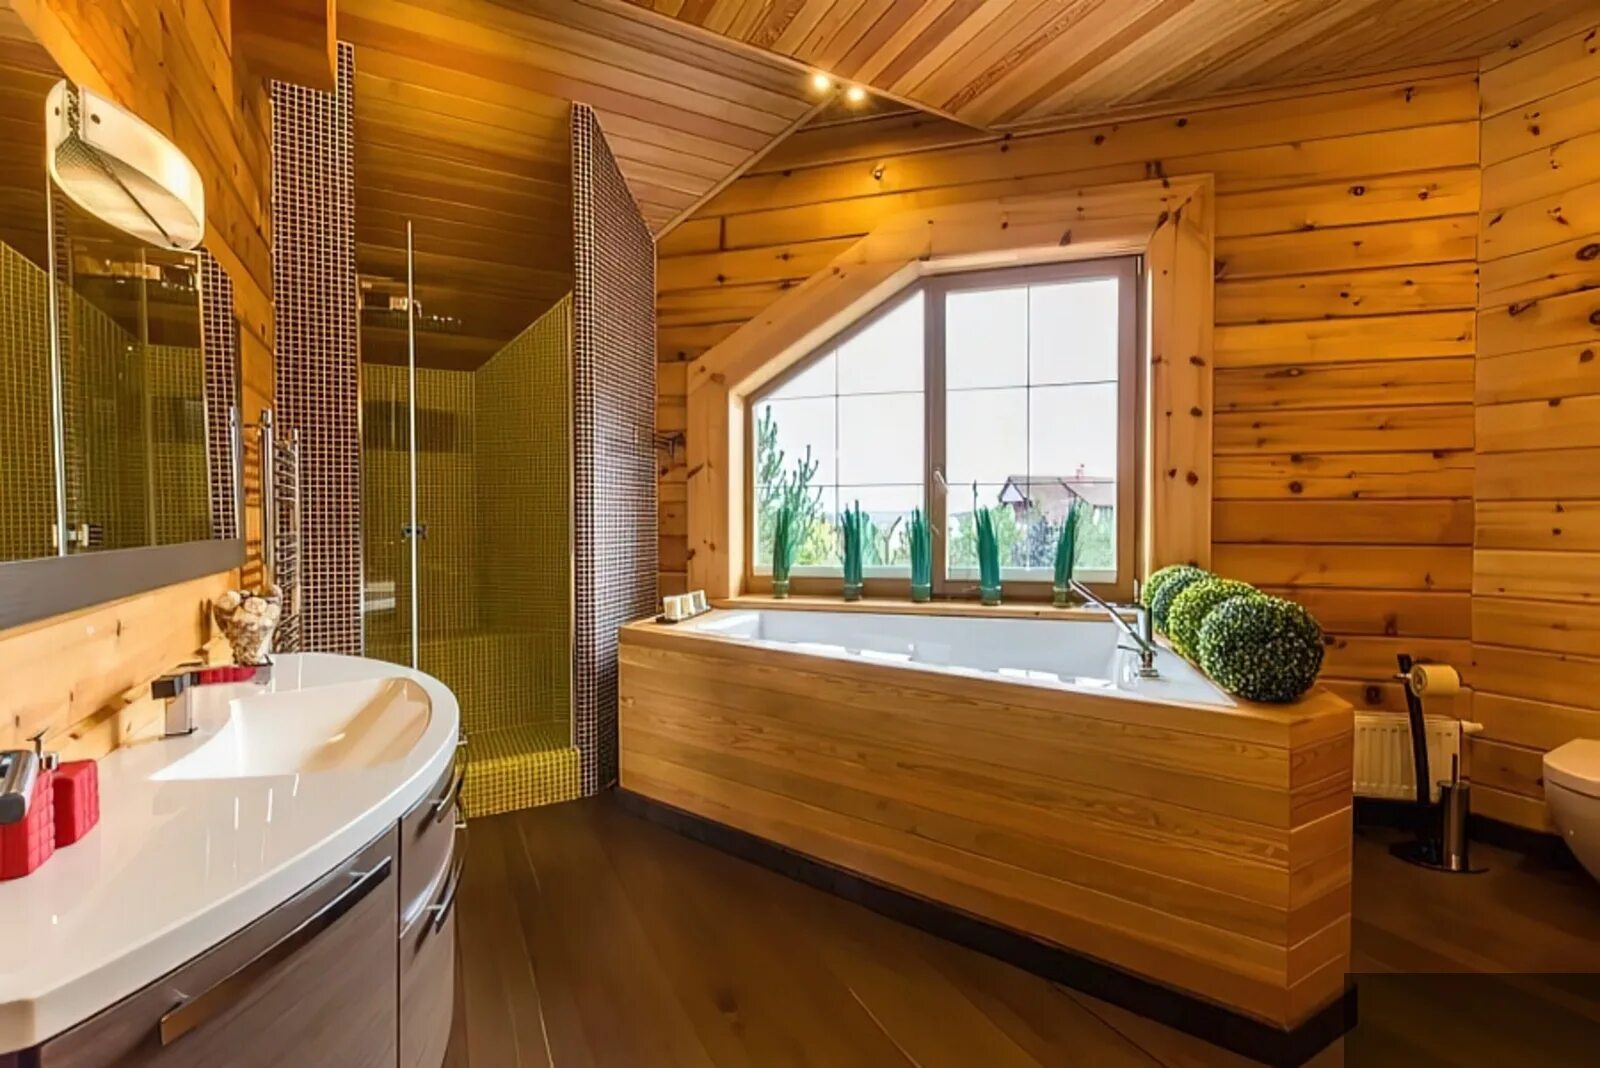 Отделка деревянной комнаты. Ванная комната в деревянном доме. Ваееая в деревянном доме. Ванная отделанная деревом. Санузел в деревянном доме.